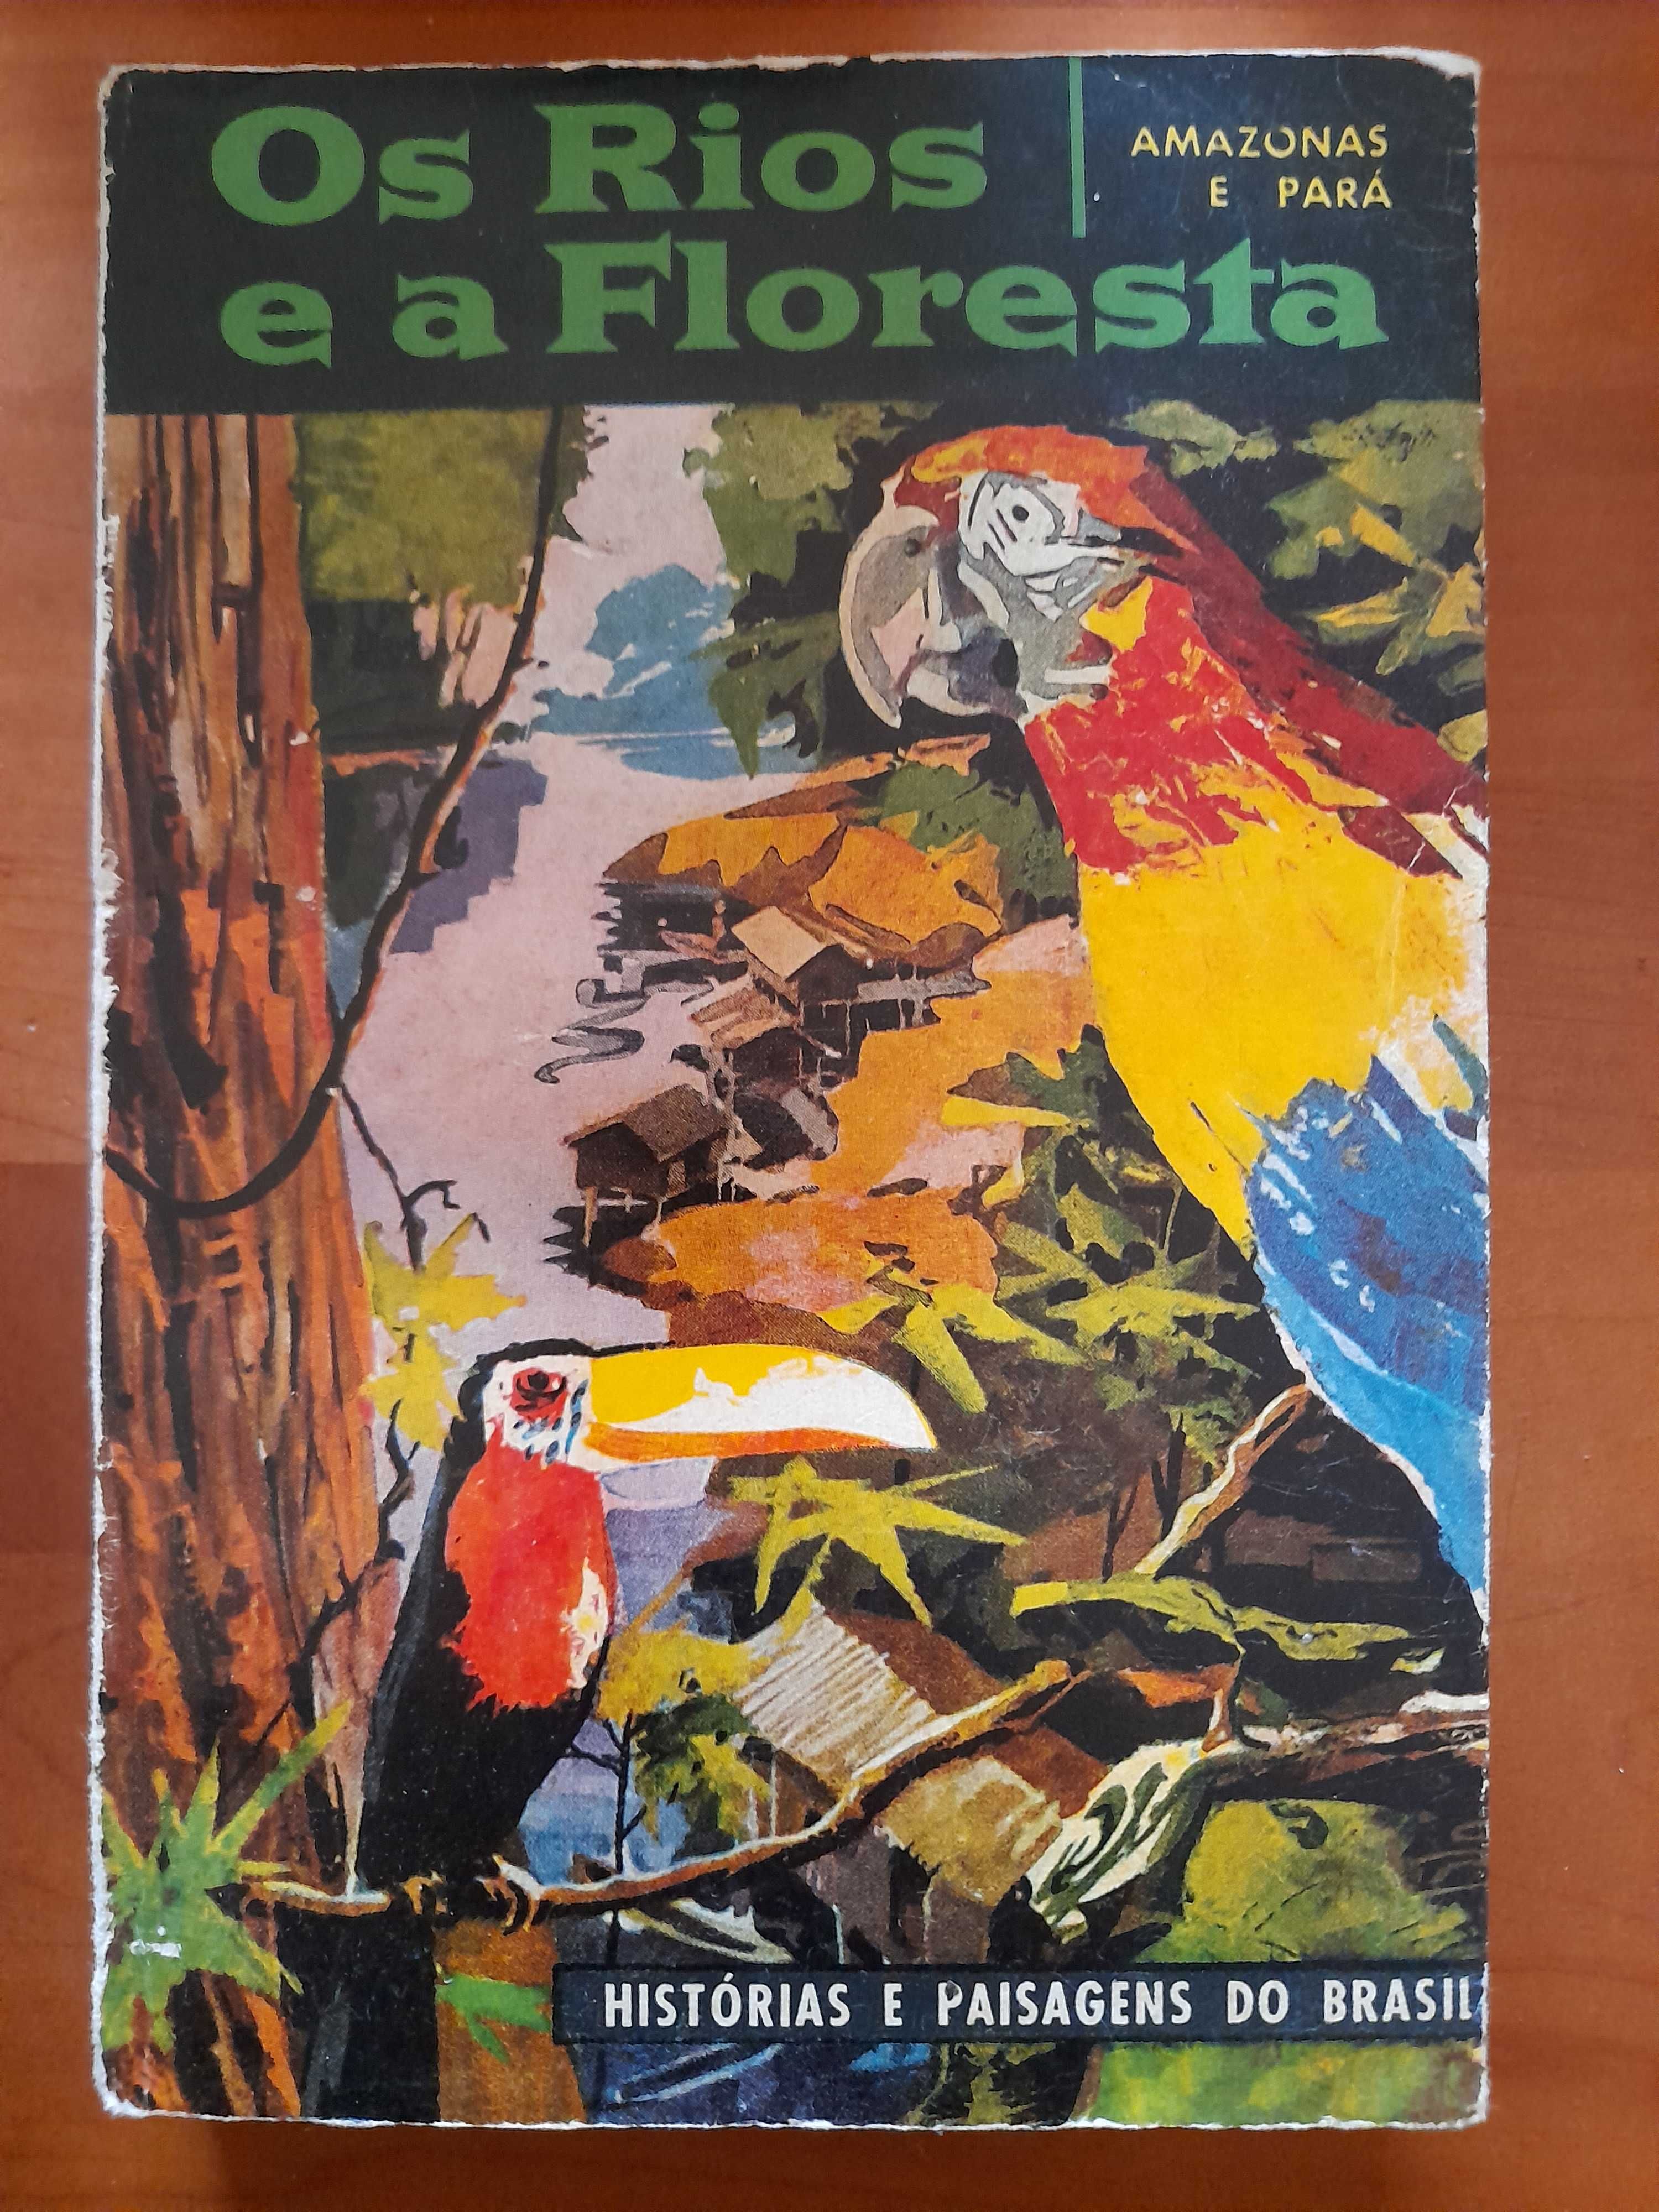 Os rios e a floresta - Histórias e paisagens do Brasil